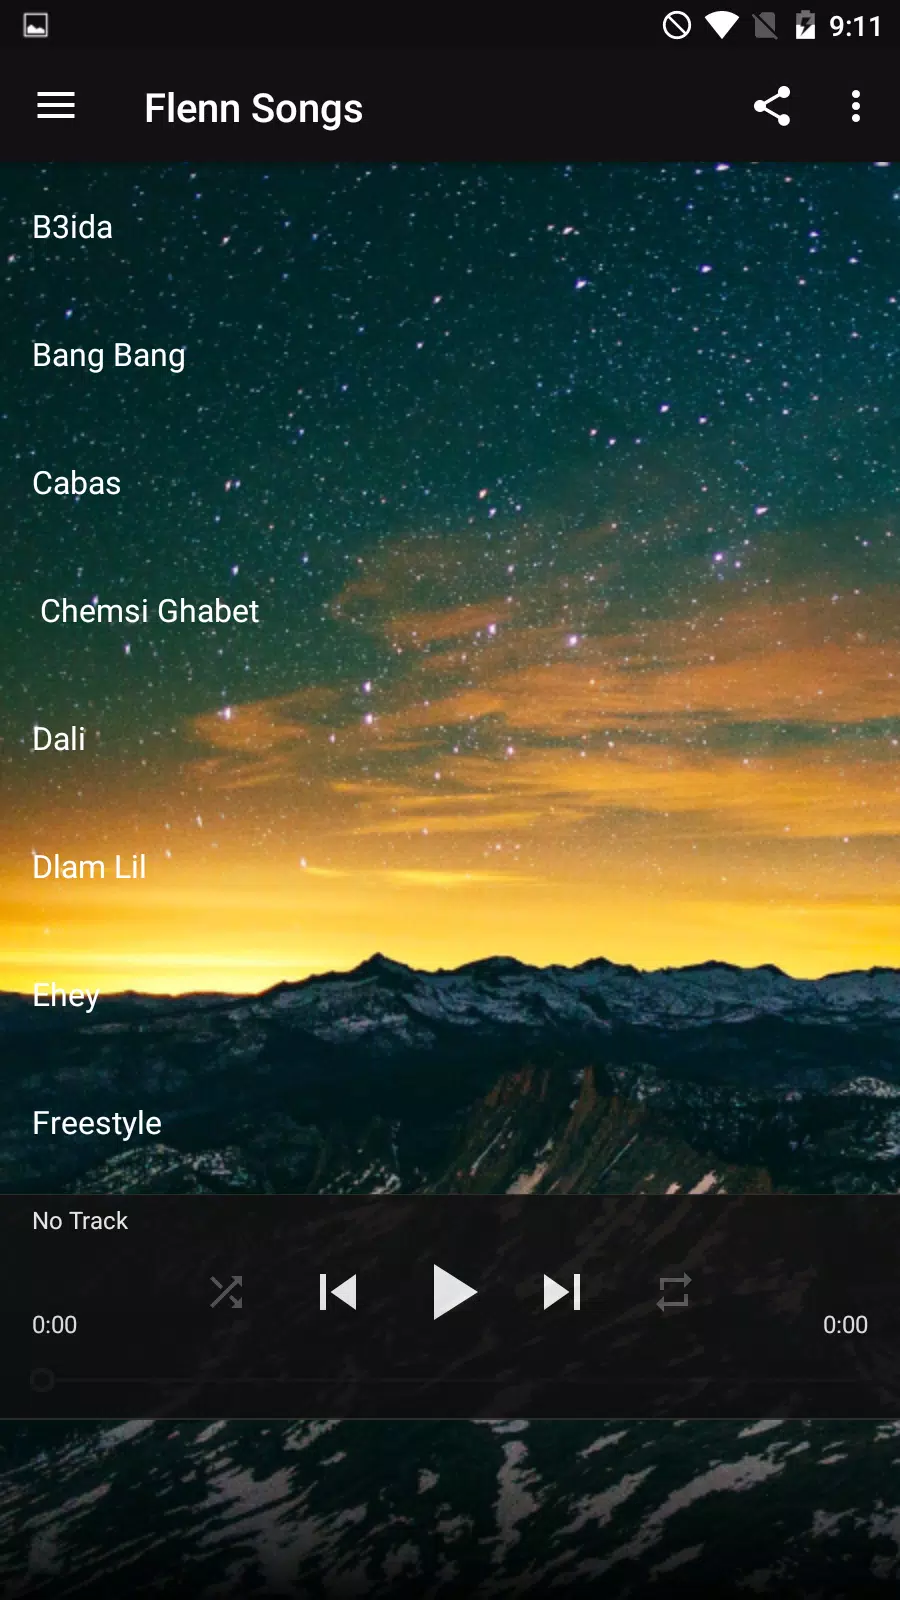 Chansons Flenn 2020 APK pour Android Télécharger